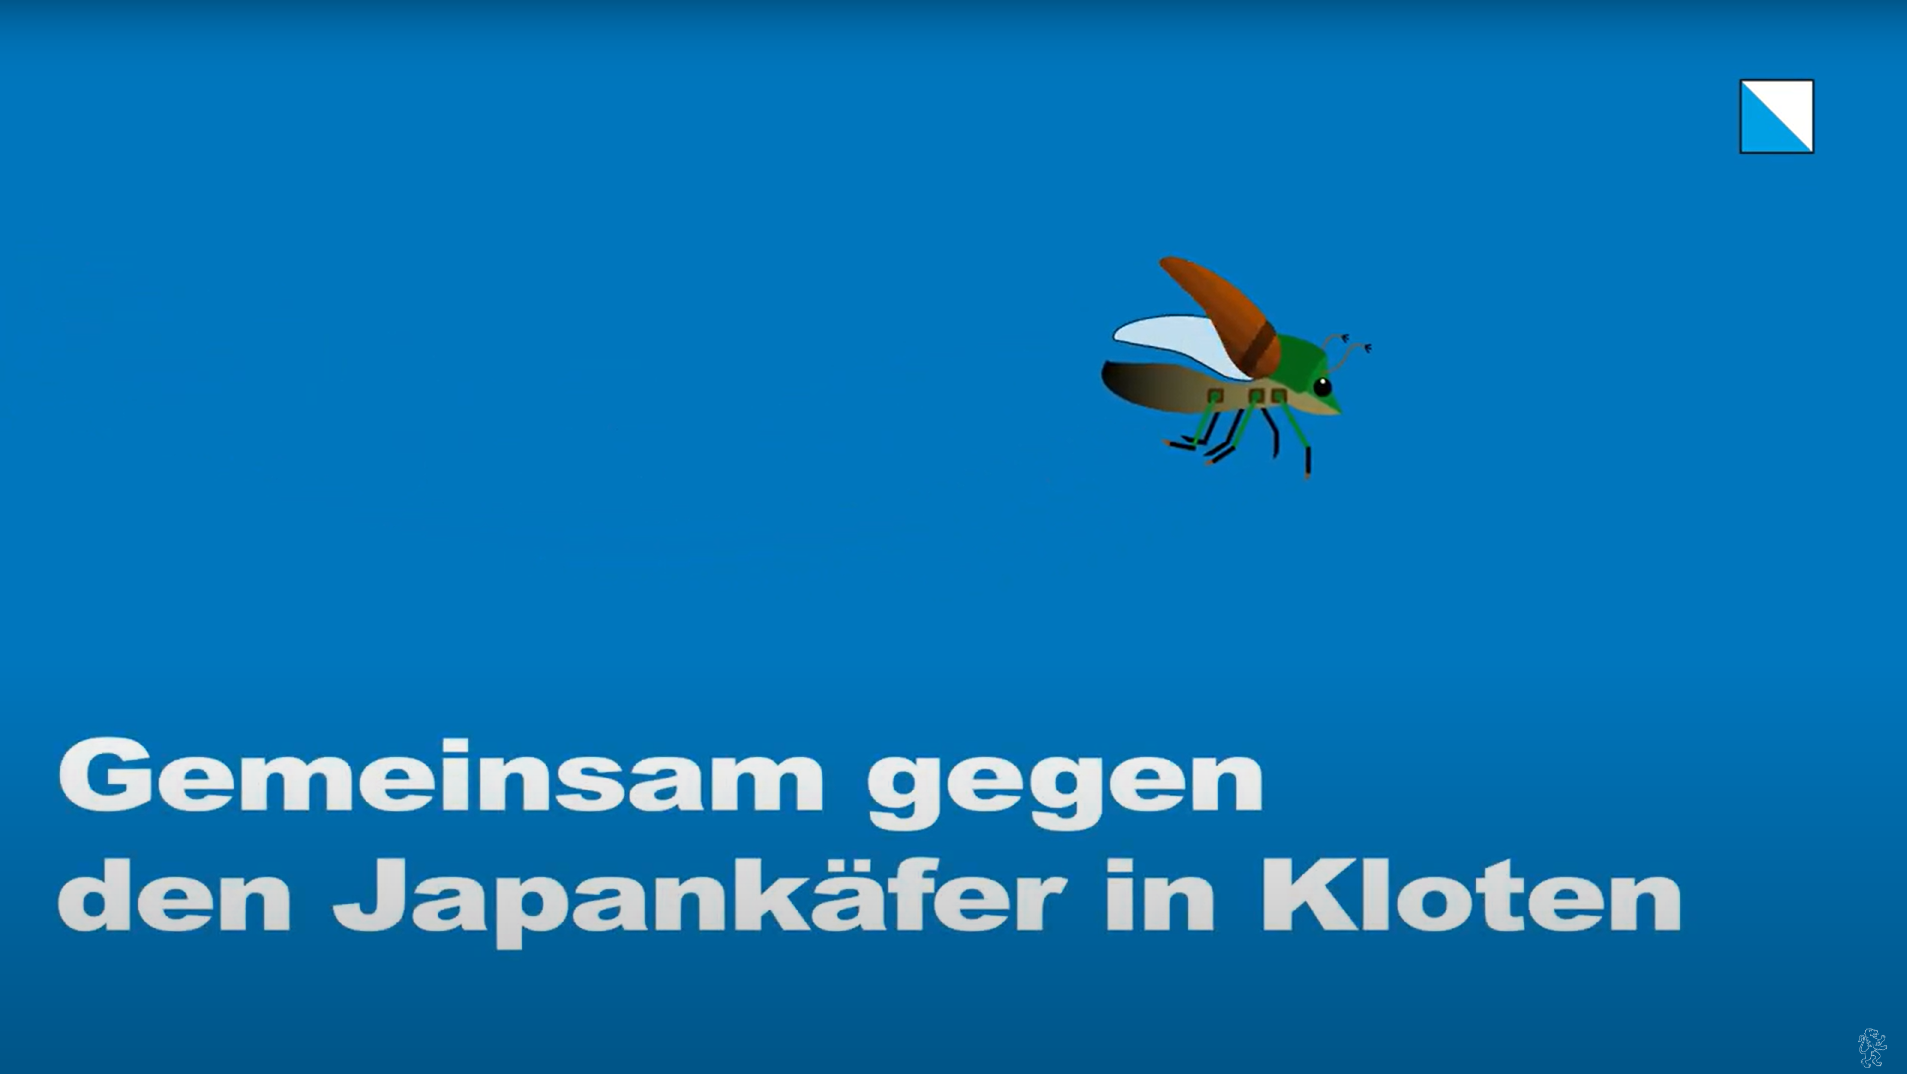 ein stilisierter Japankäfer fliegt auf einem blauen Hintergrund durch das Bild, darunter steht «Gemeinsam gegen den Japankäfer in Kloten»